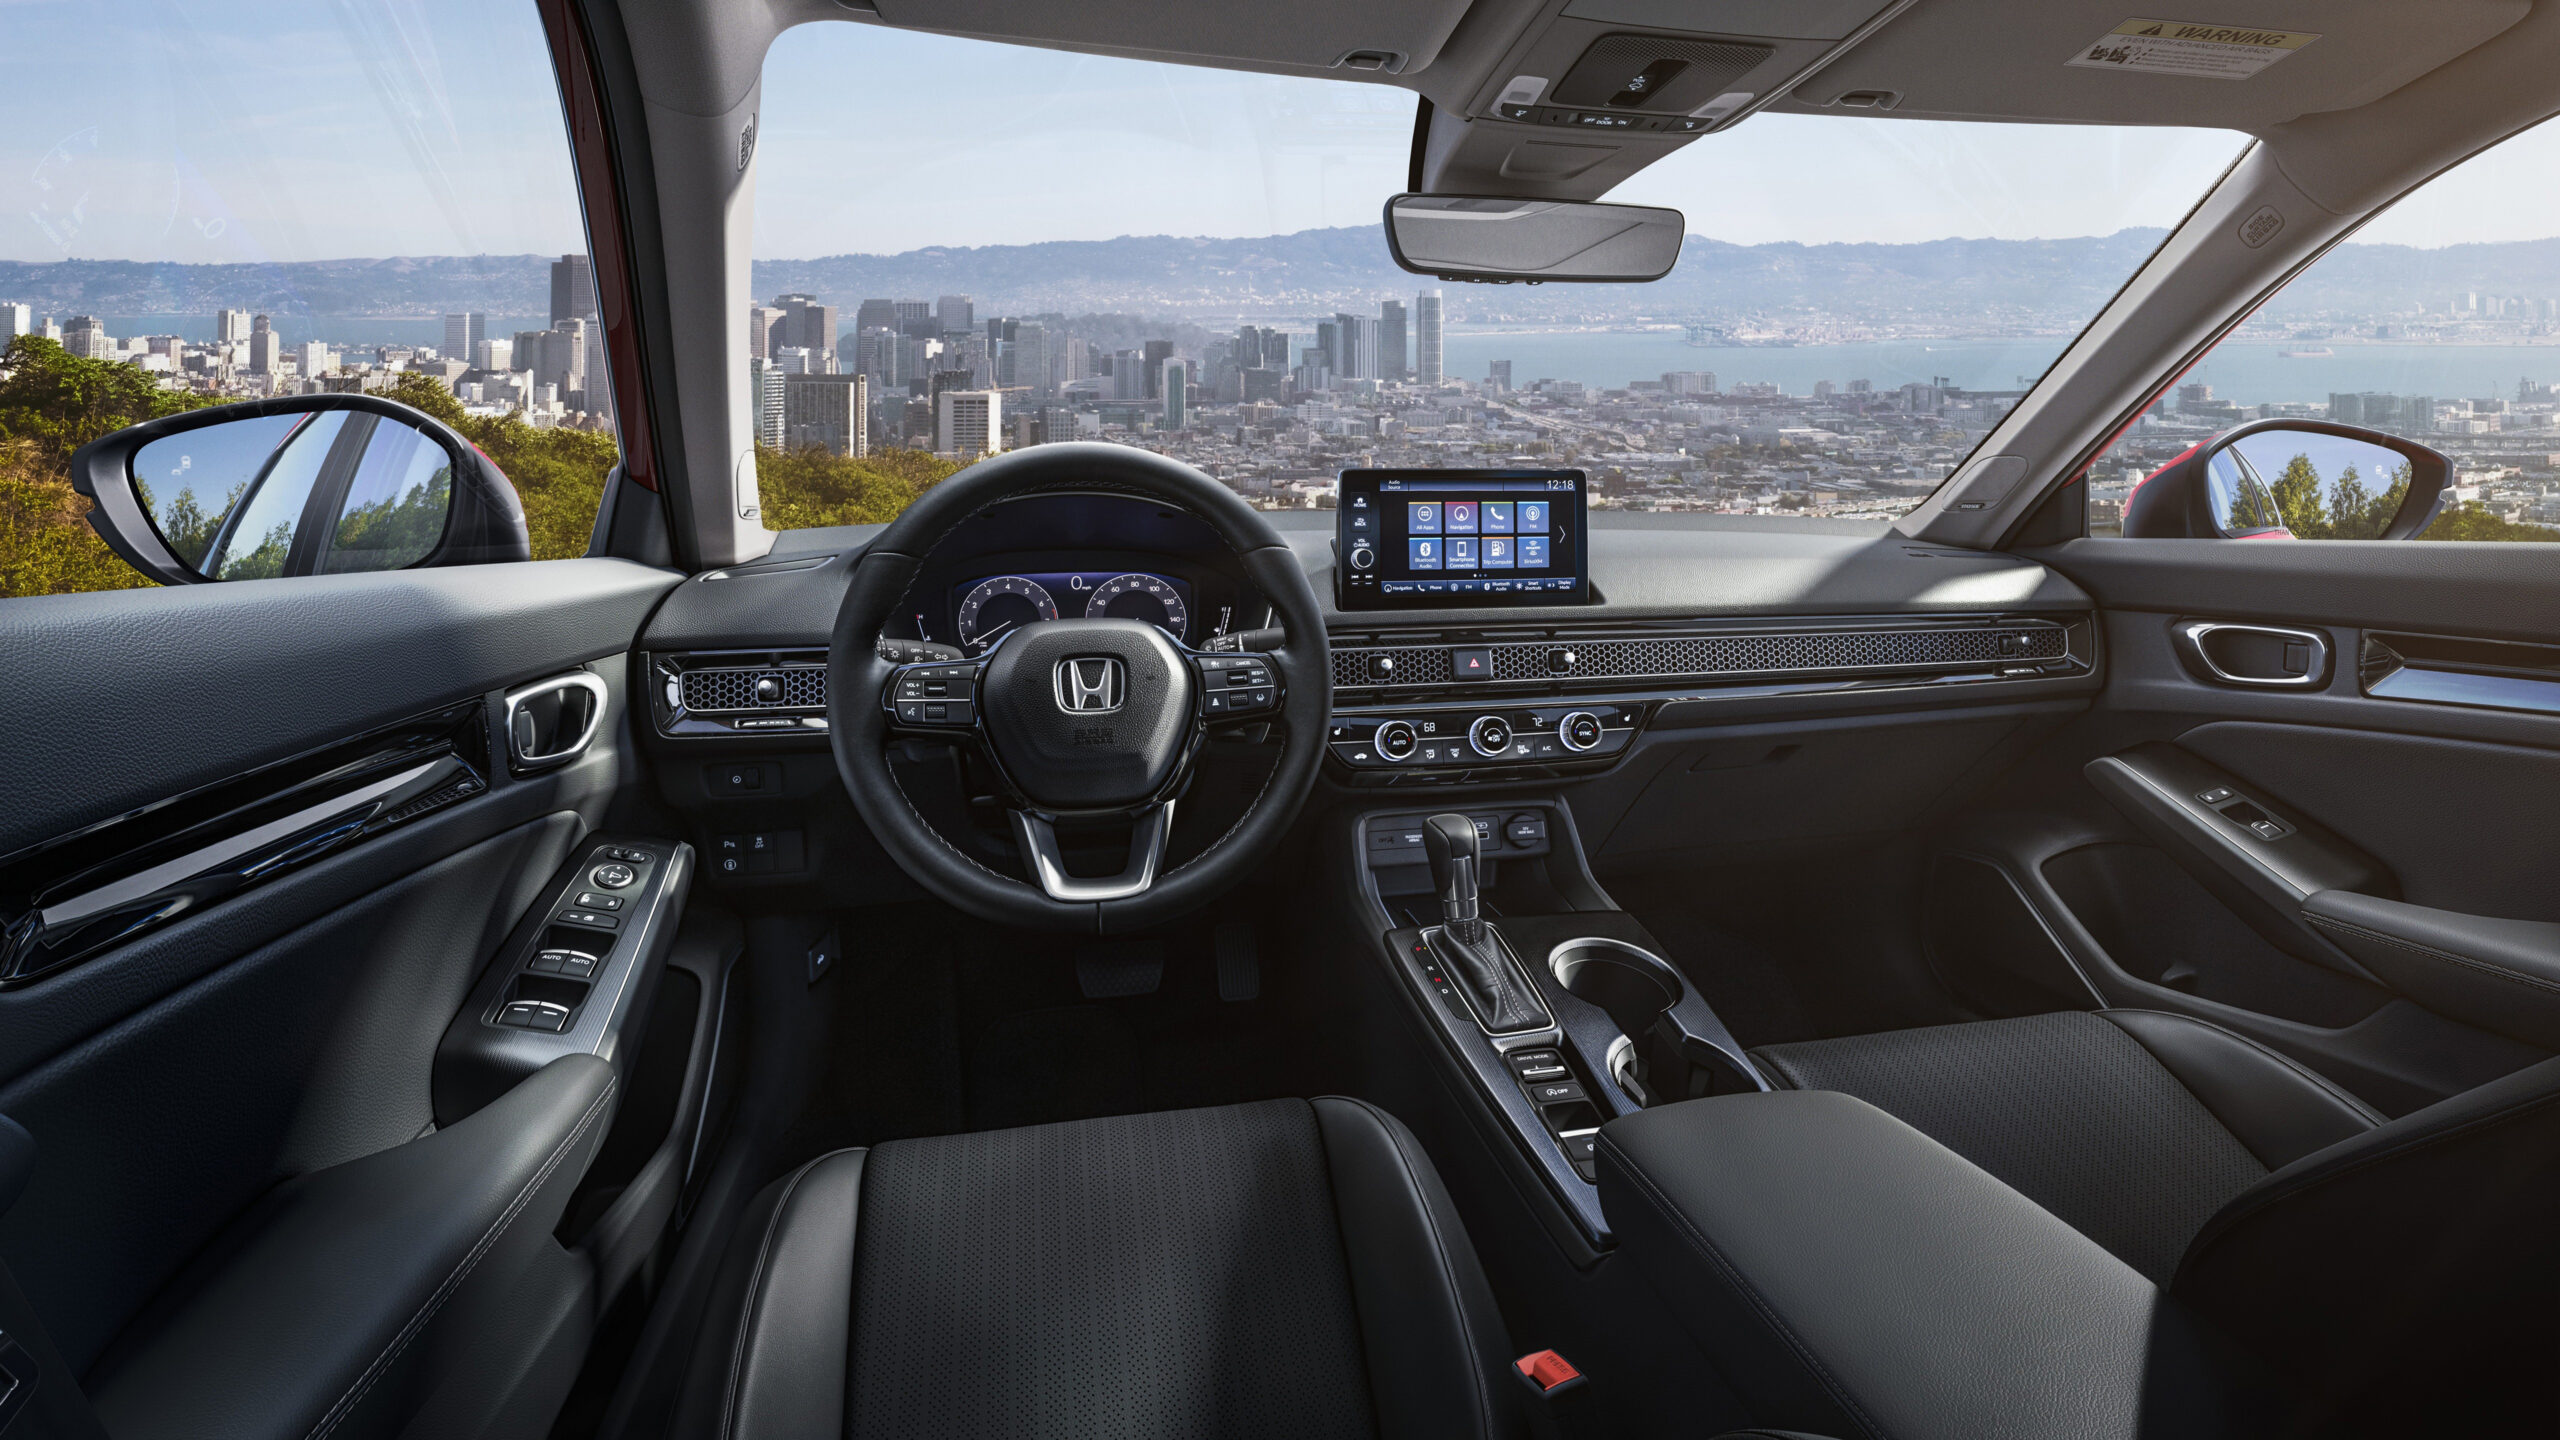 Honda Civic Sedan Sport Interior K K 2K Cars